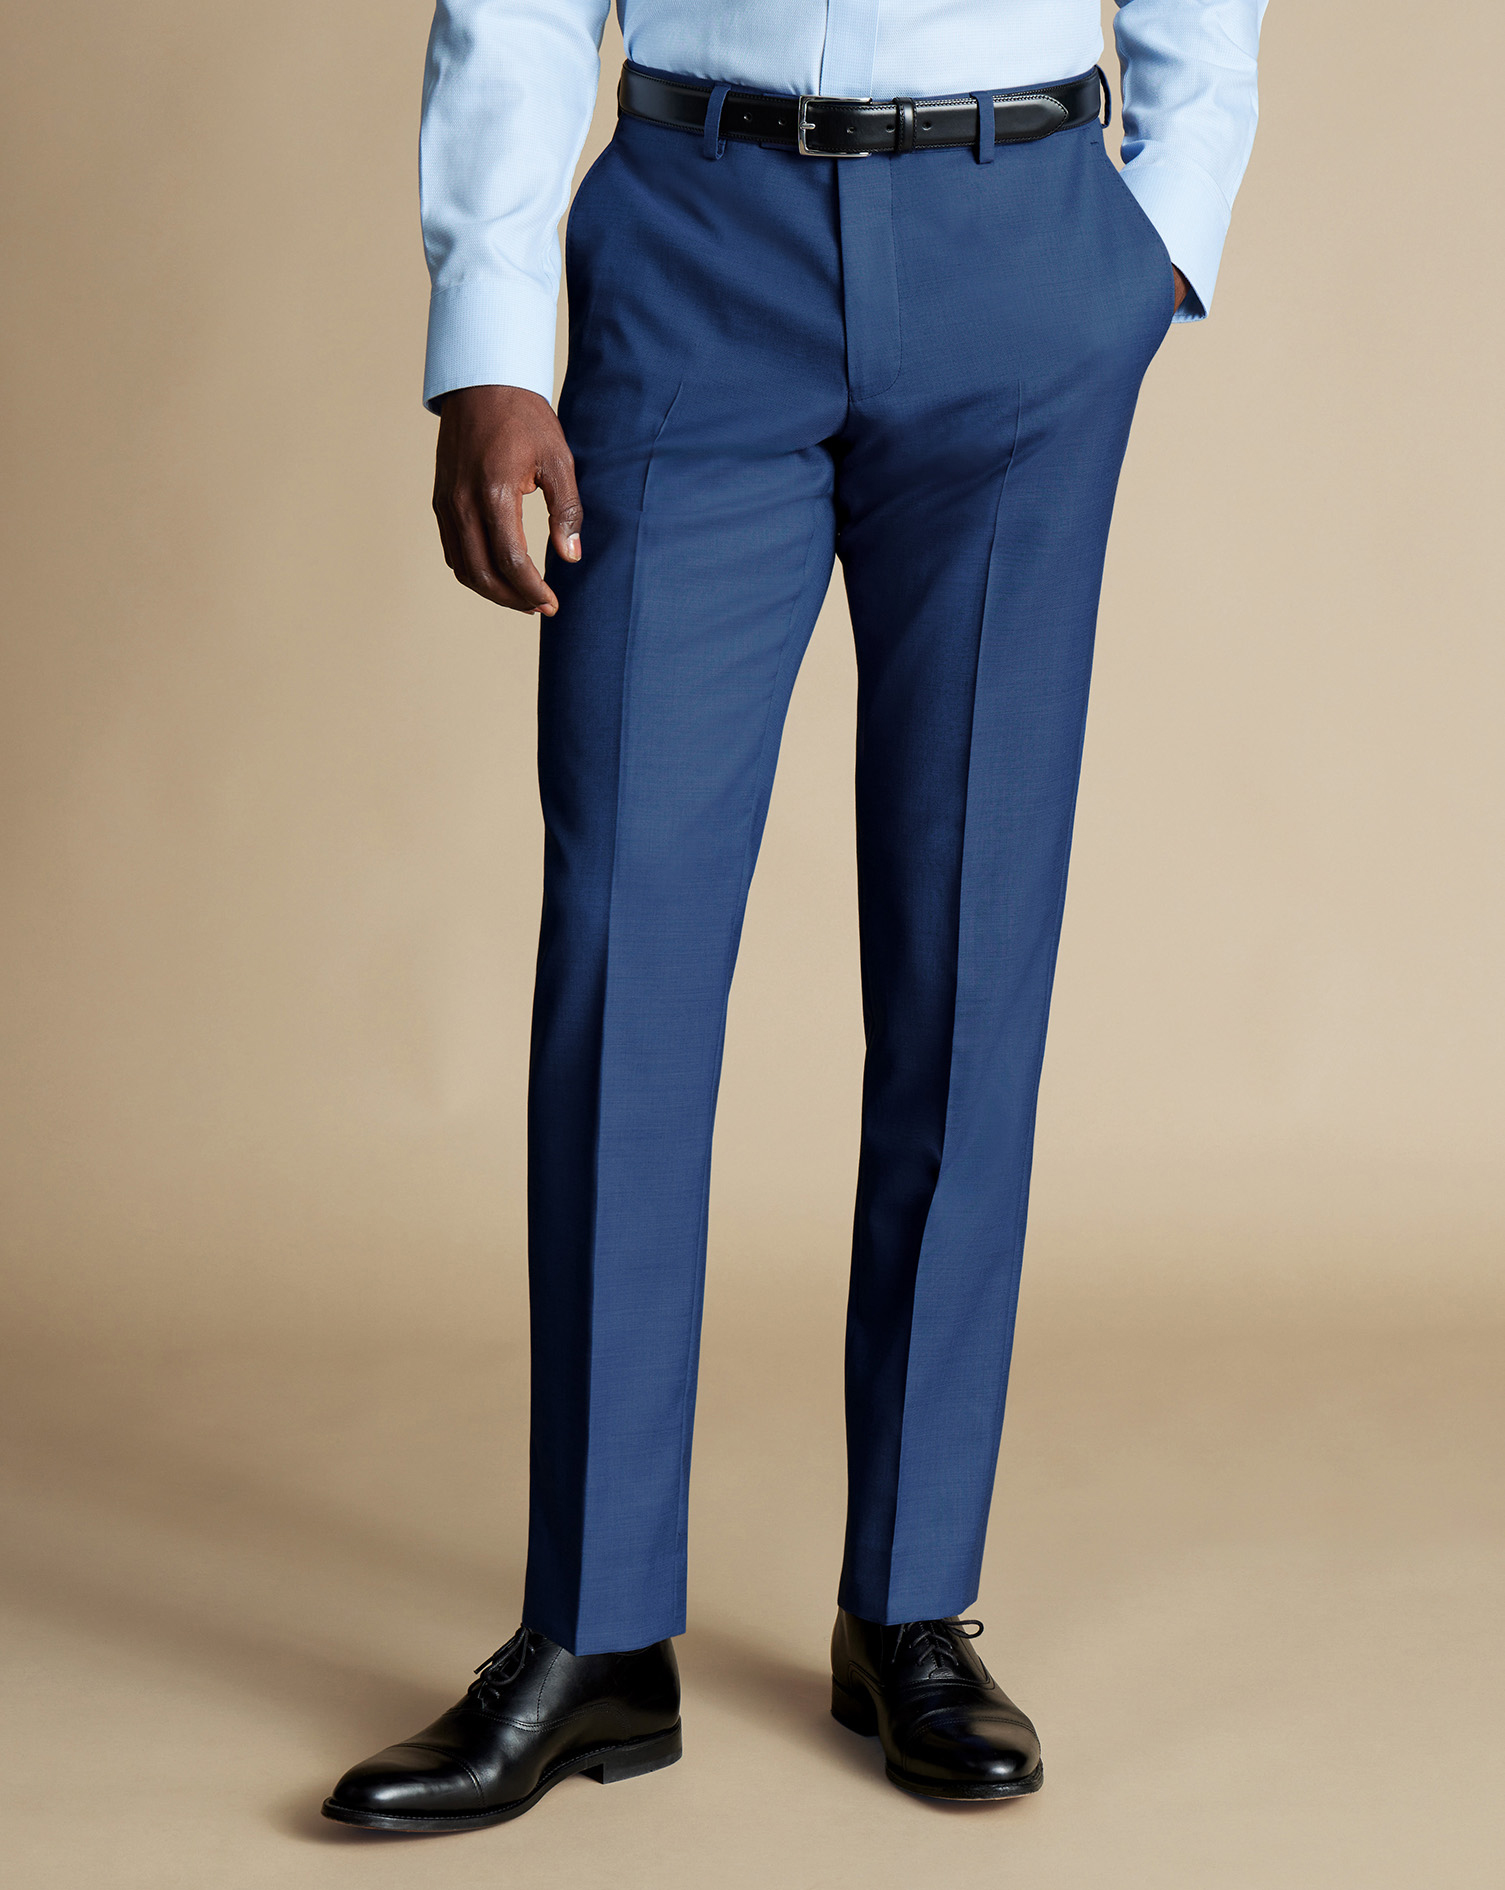 Men's Charles Tyrwhitt Ultimate Performance Sharkskin Suit Trousers - Indigo Blue Size 36/30
